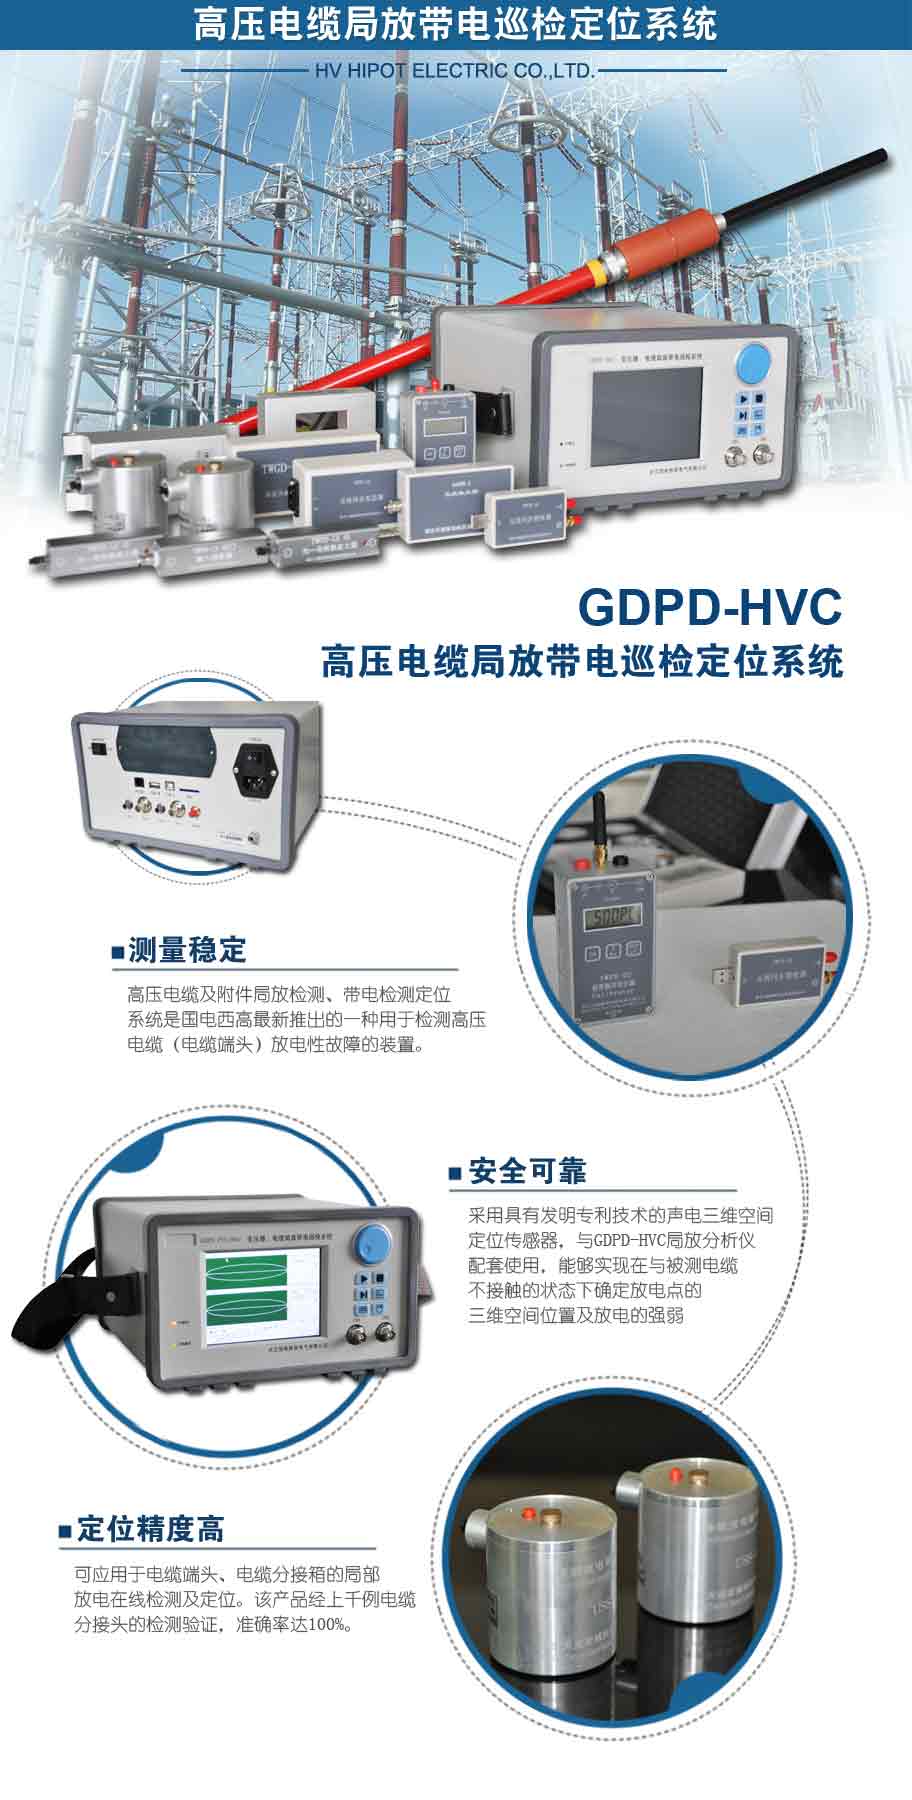 GDPD-HVC